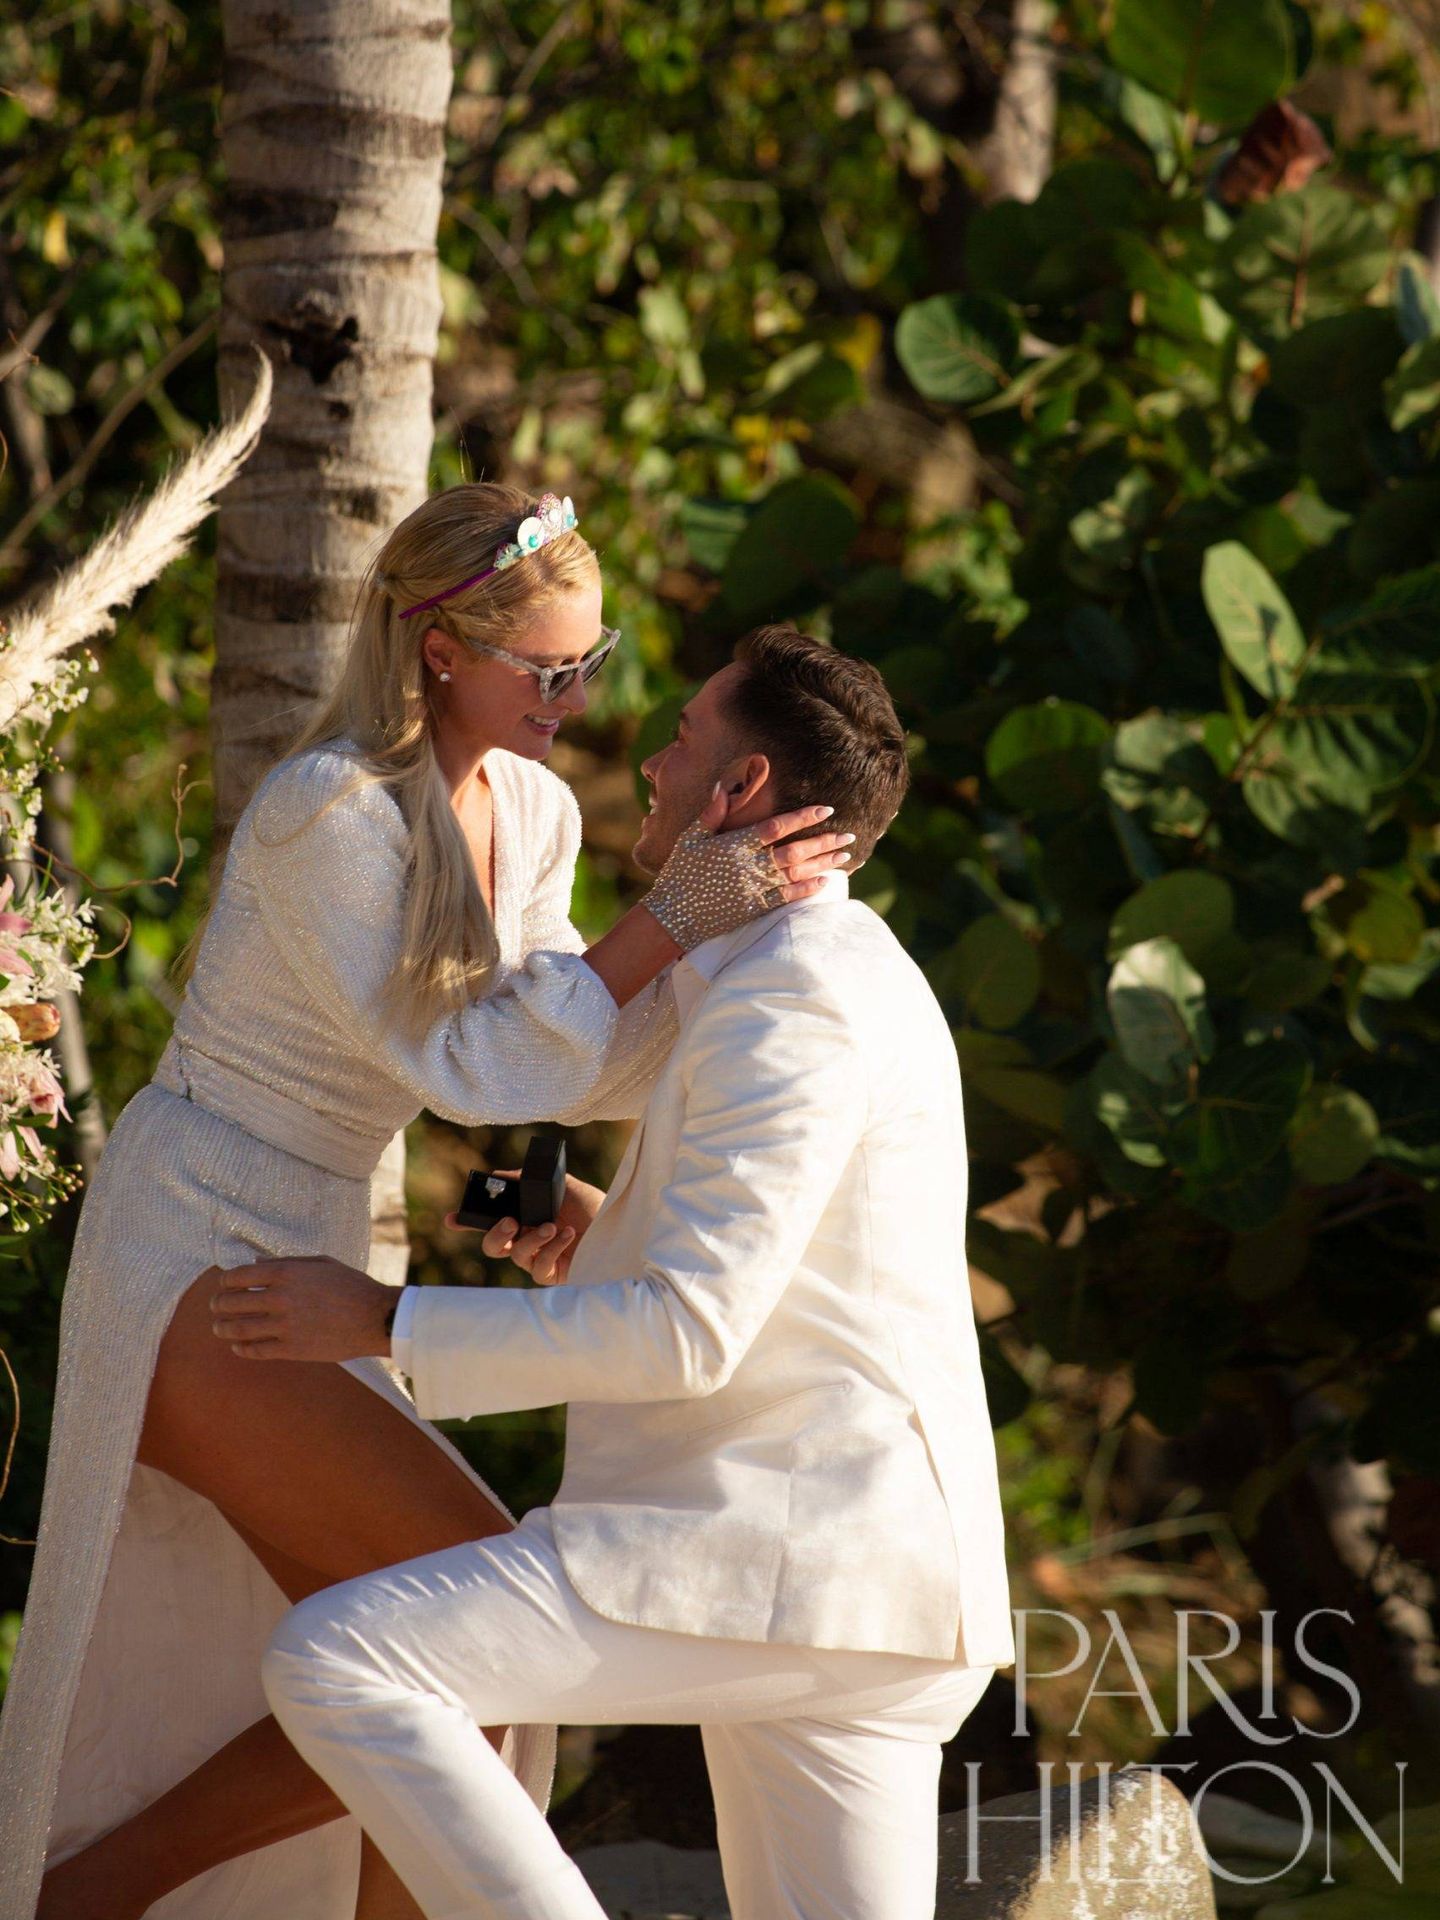 Paris Hilton y su prometido en una imagen en la que se puede apreciar el fabuloso anillo de compromiso. (Cortesía ParisHilton.com)